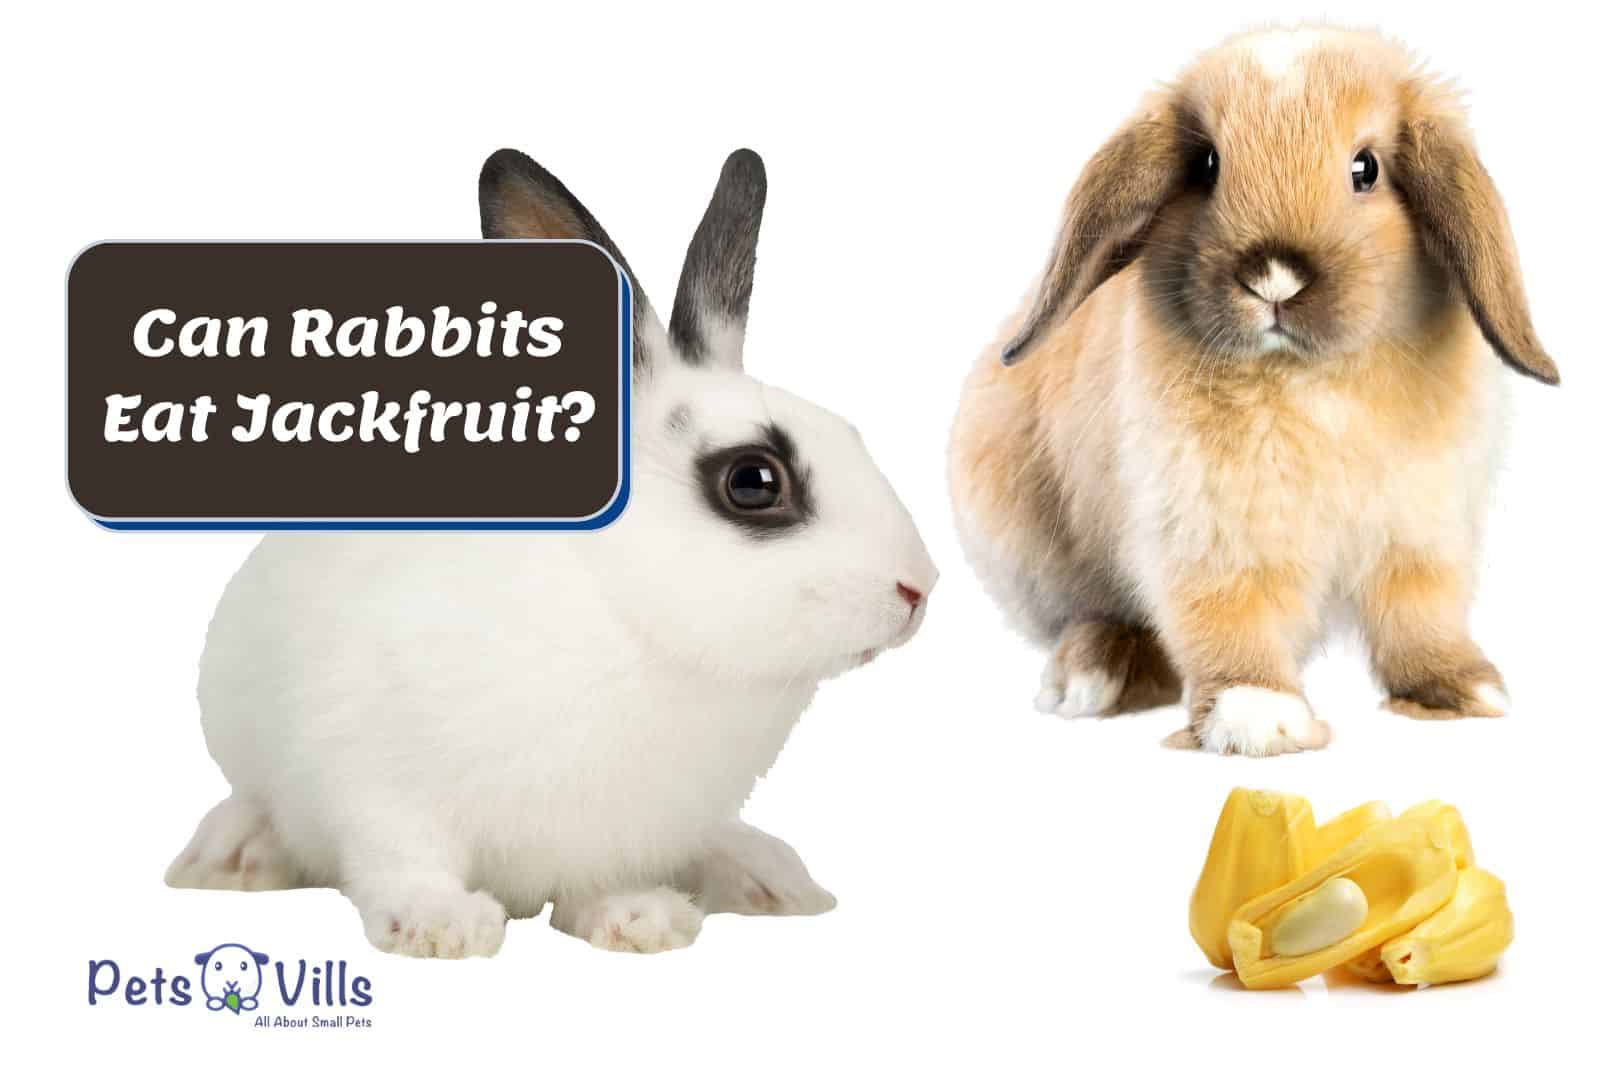 Rabbits and tiny pieces of jackfruit. Can Rabbits Eat Jackfruit?